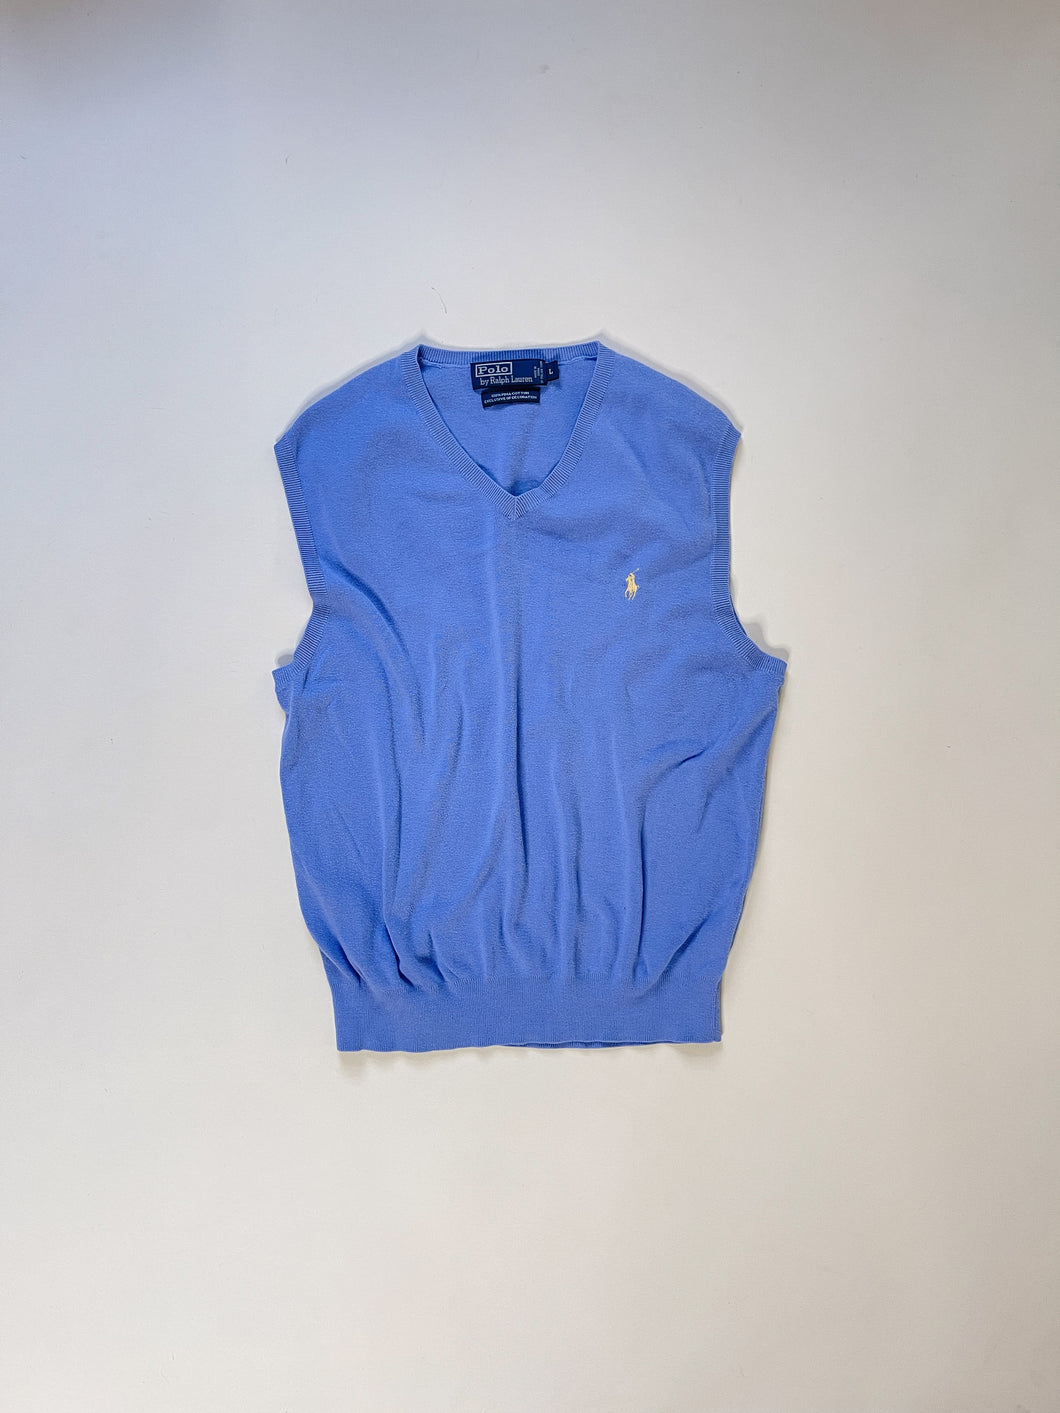 Early 90s Polo Ralph Lauren Pima Cotton Blue Sweater Vest | M-L